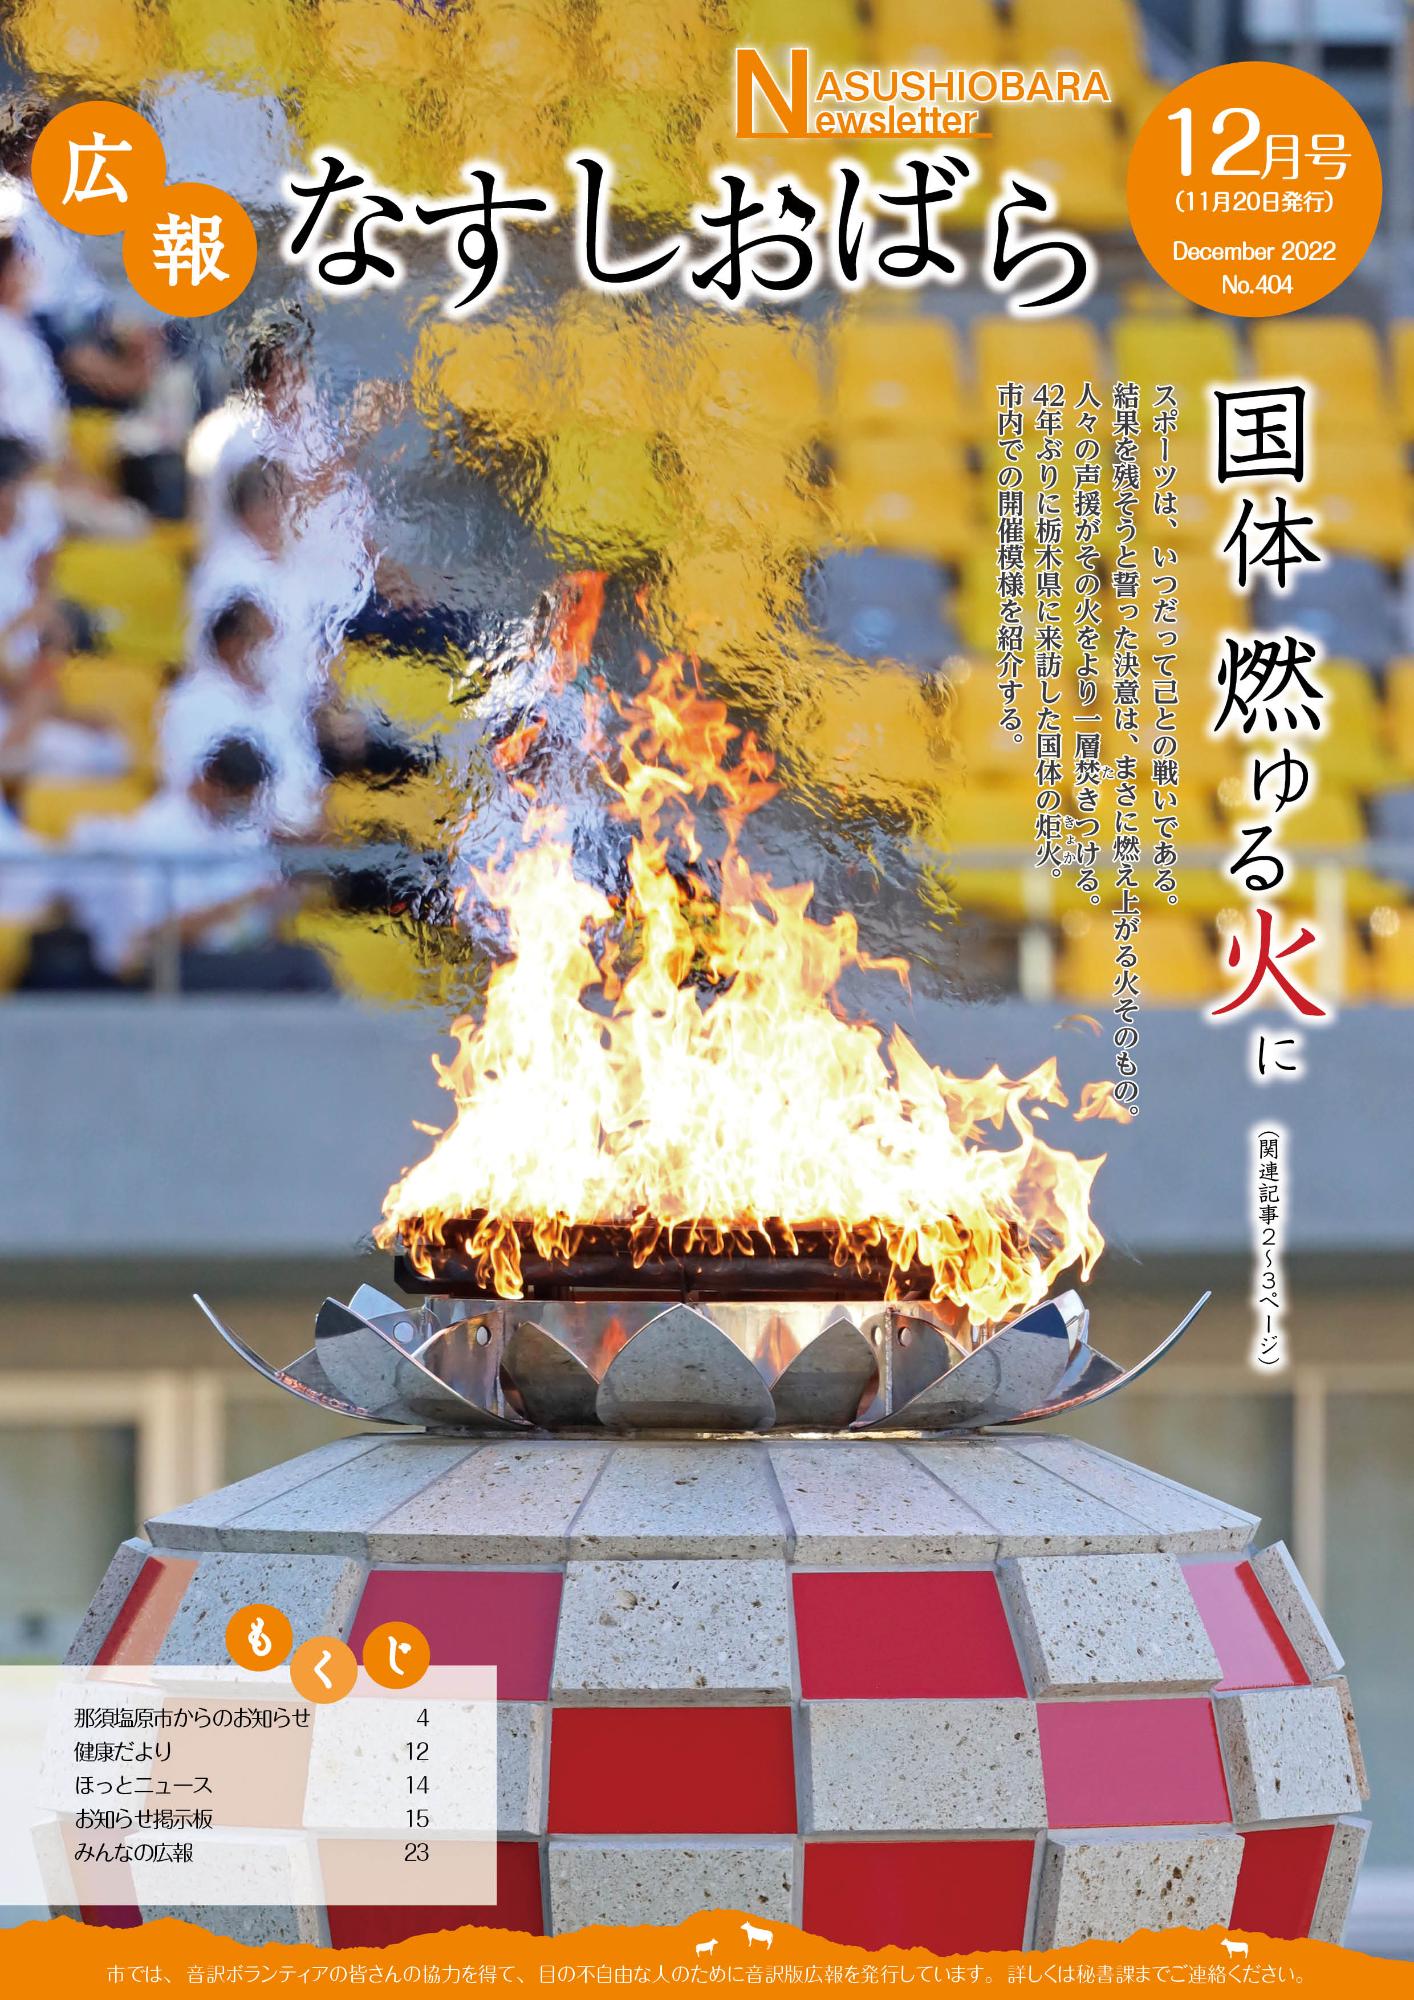 広報なすしおばら12月号表紙「燃え上がる国体の炬火、42年ぶりに栃木へ」